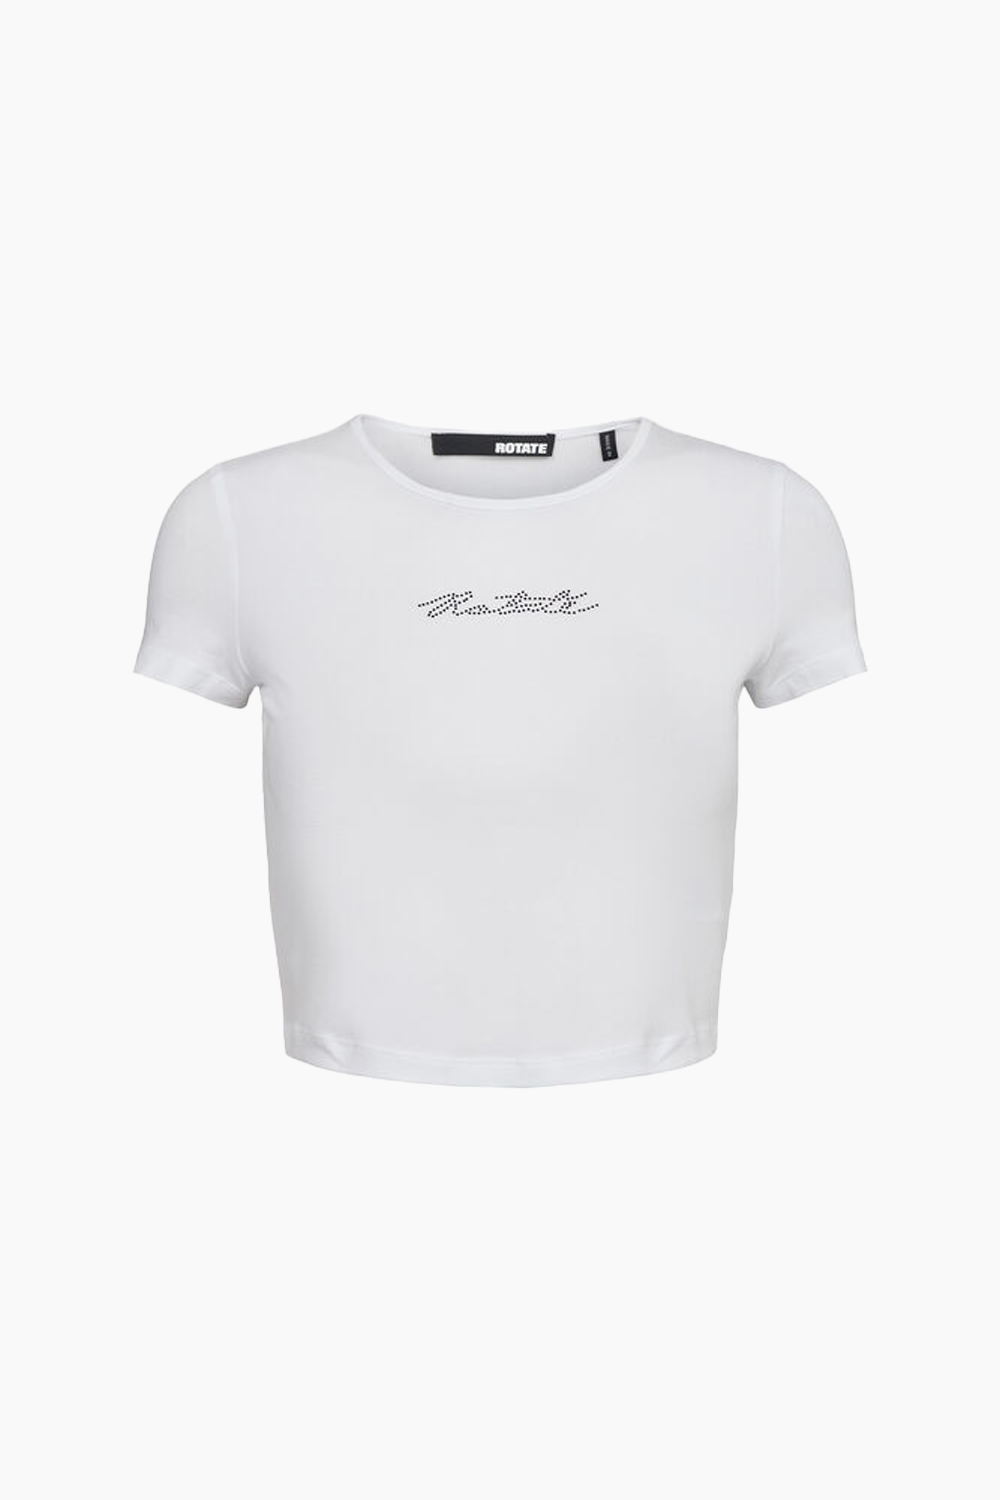 Billede af Cropped T-shirt - Bright White - ROTATE - Hvid M